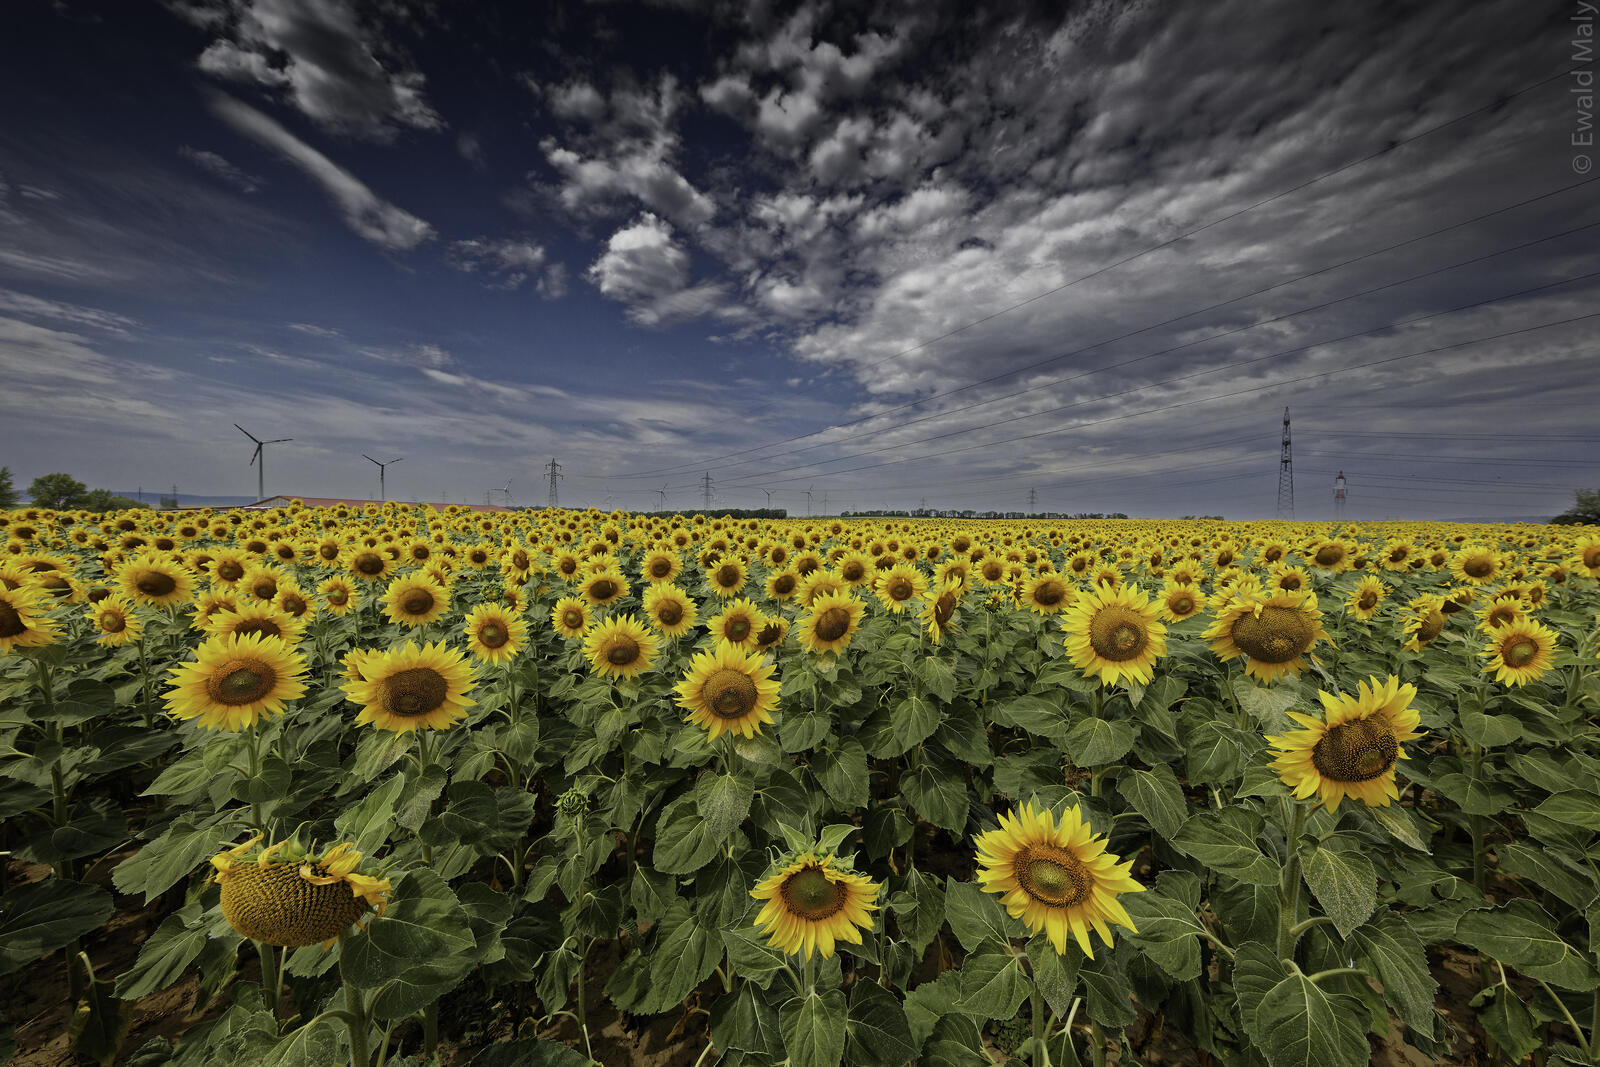 Wallpapers sunflowers sunflower field large field on the desktop